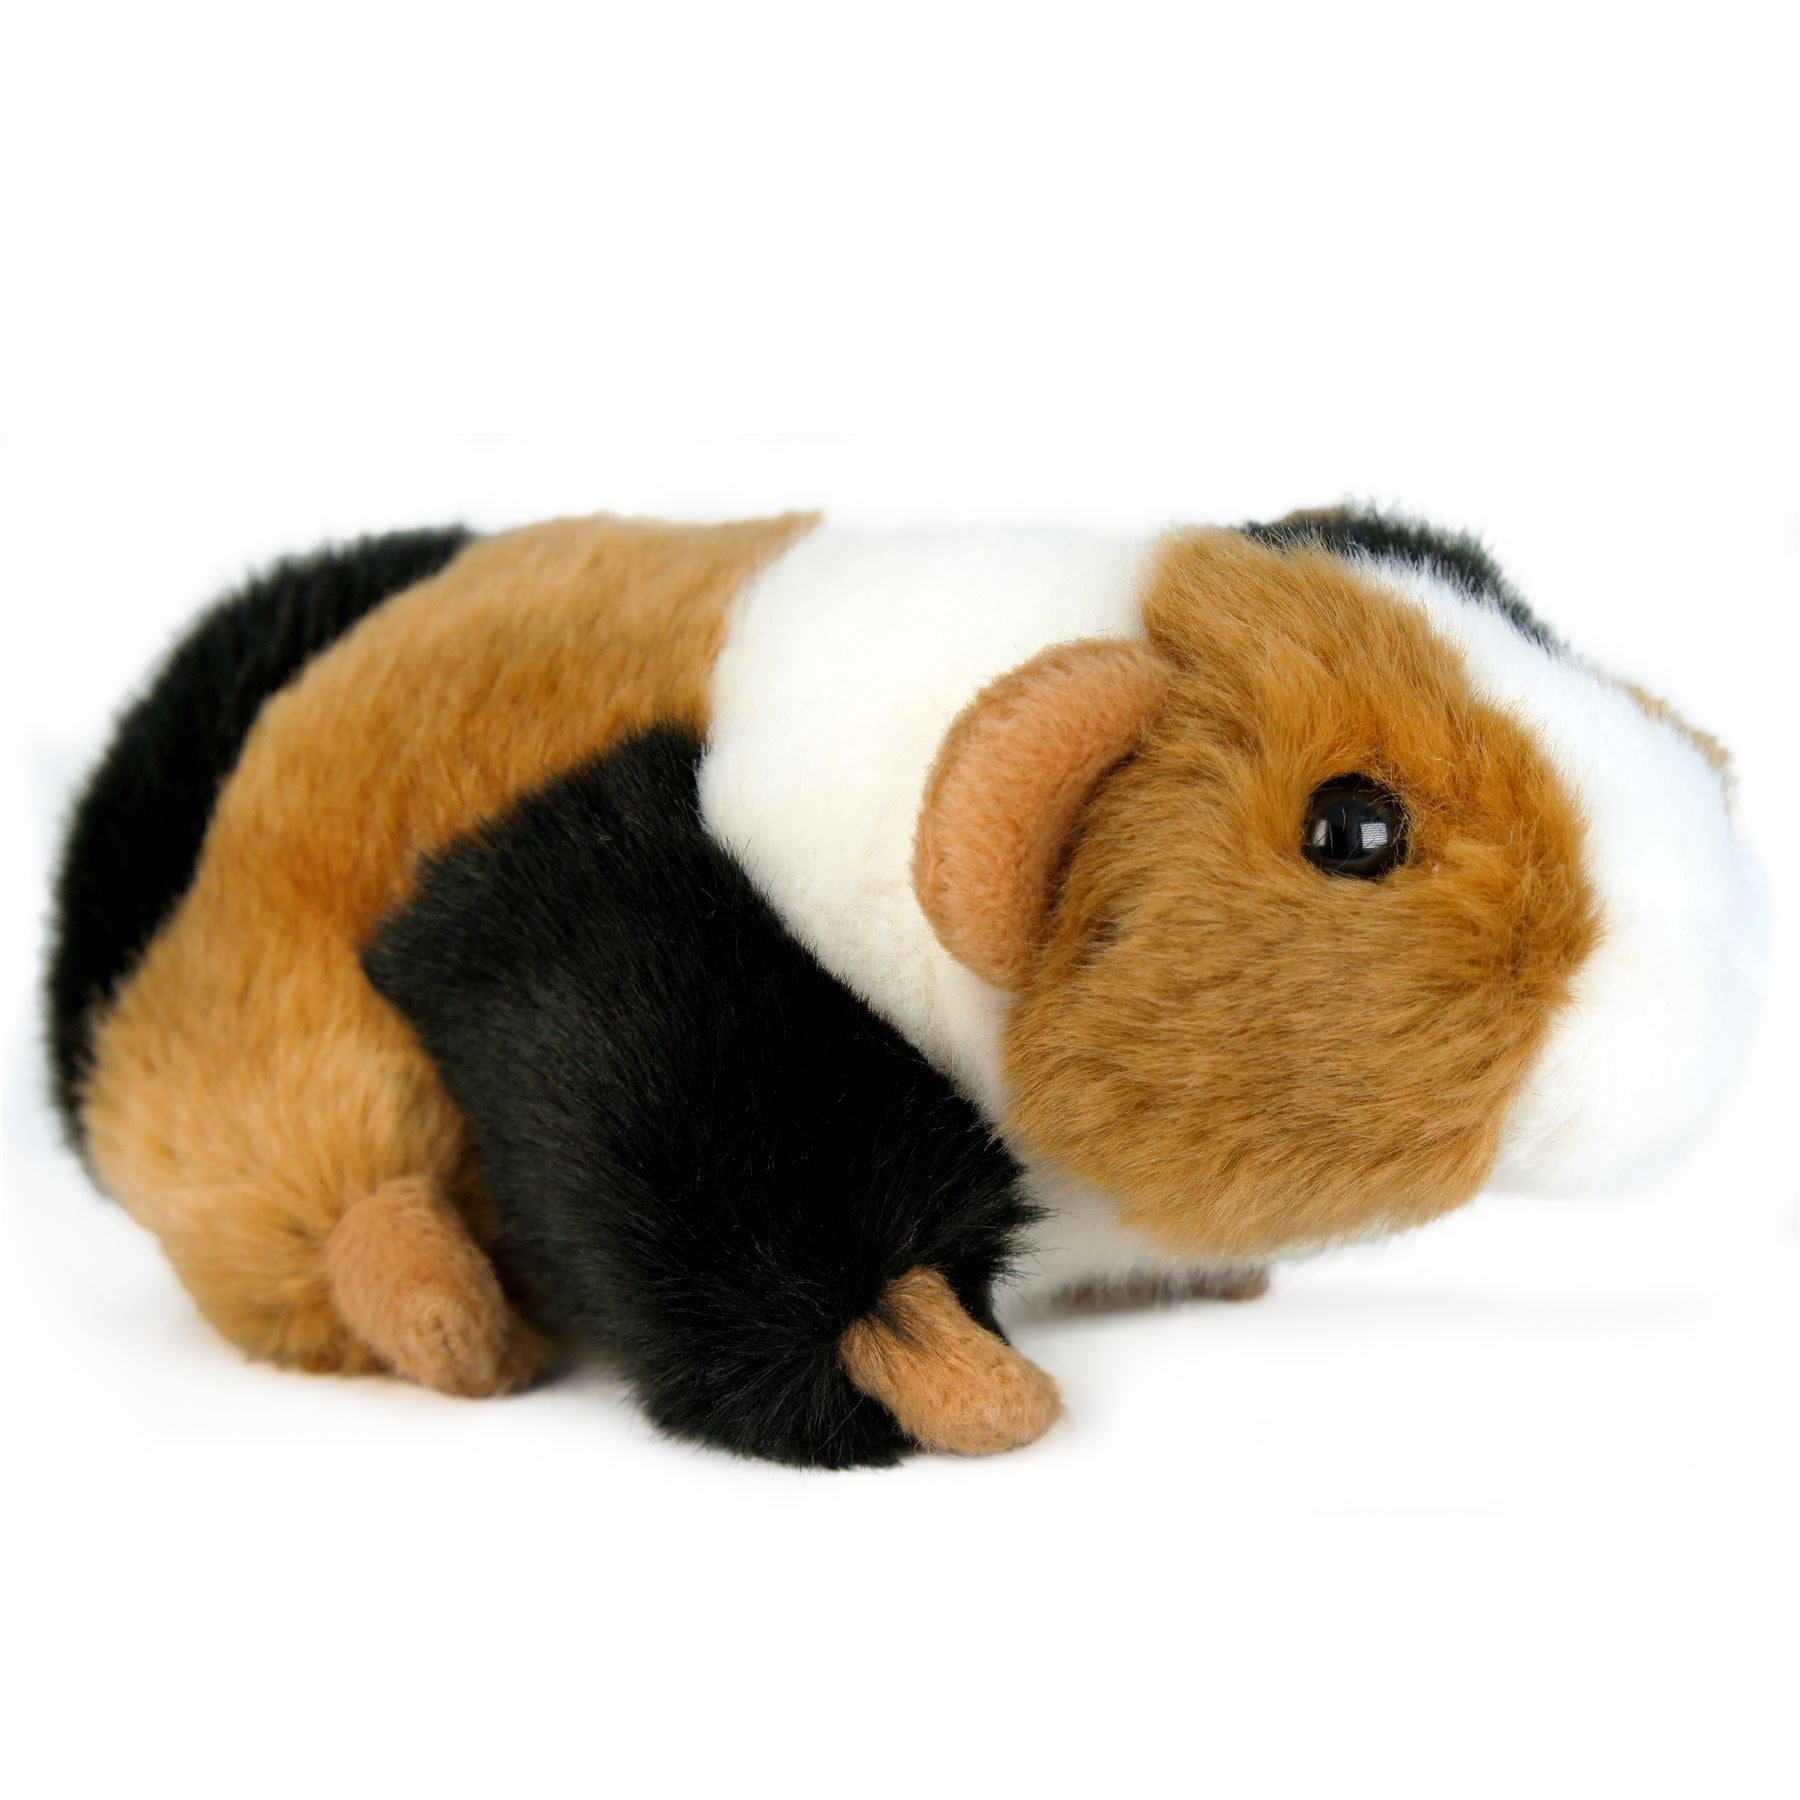 guinea pig toys walmart